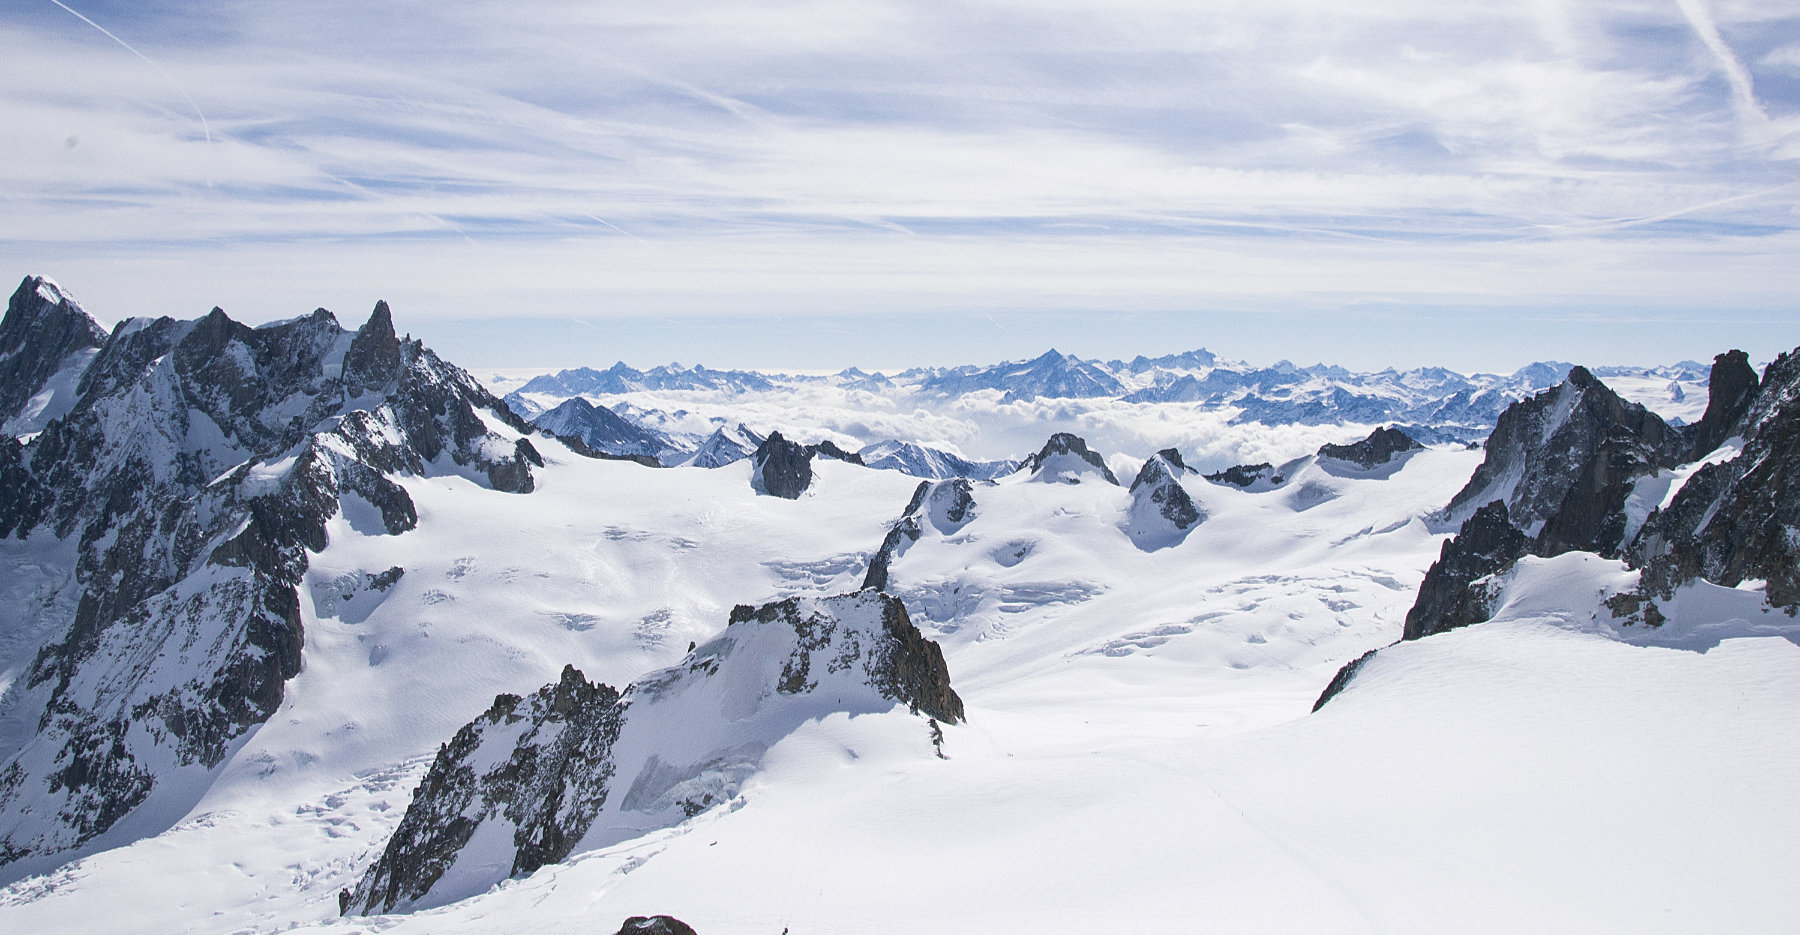 Höchster Berg Europas - welcher ist es? Wenn Sie wissen wollen, welcher der höchste Berg in Europa ist, dann sind Sie hier richtig! Bildquelle: Pexels / Pixabay (CC0-Lizenz)